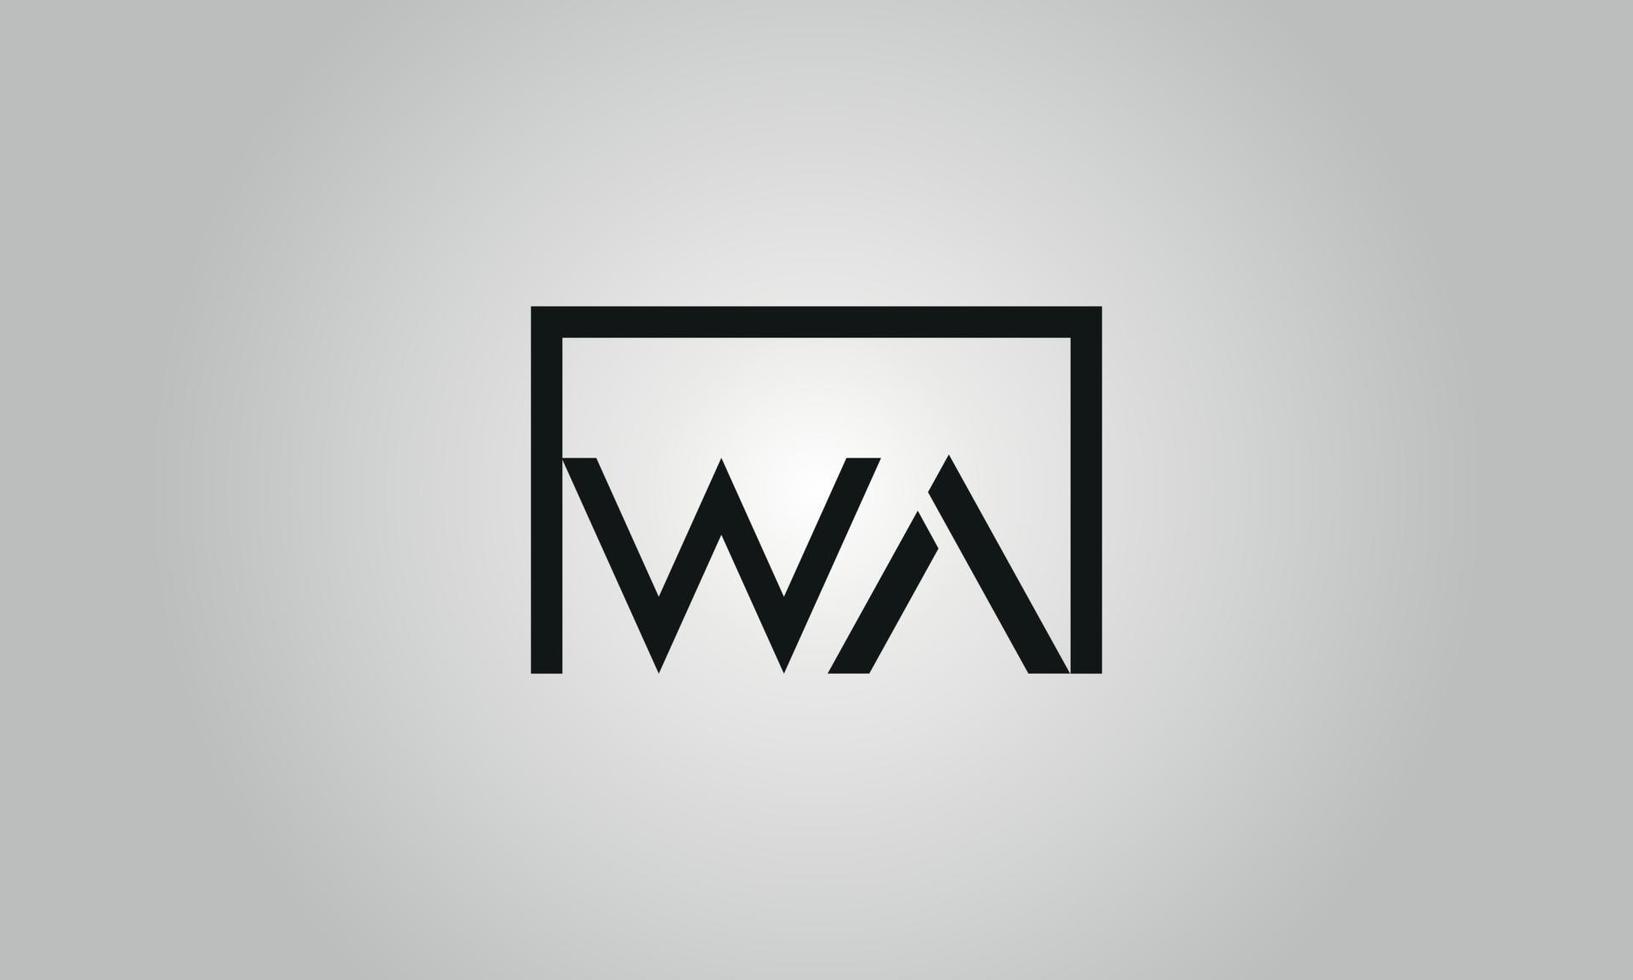 création de logo lettre wa. logo wa avec forme carrée dans le modèle de vecteur gratuit de vecteur de couleurs noires.